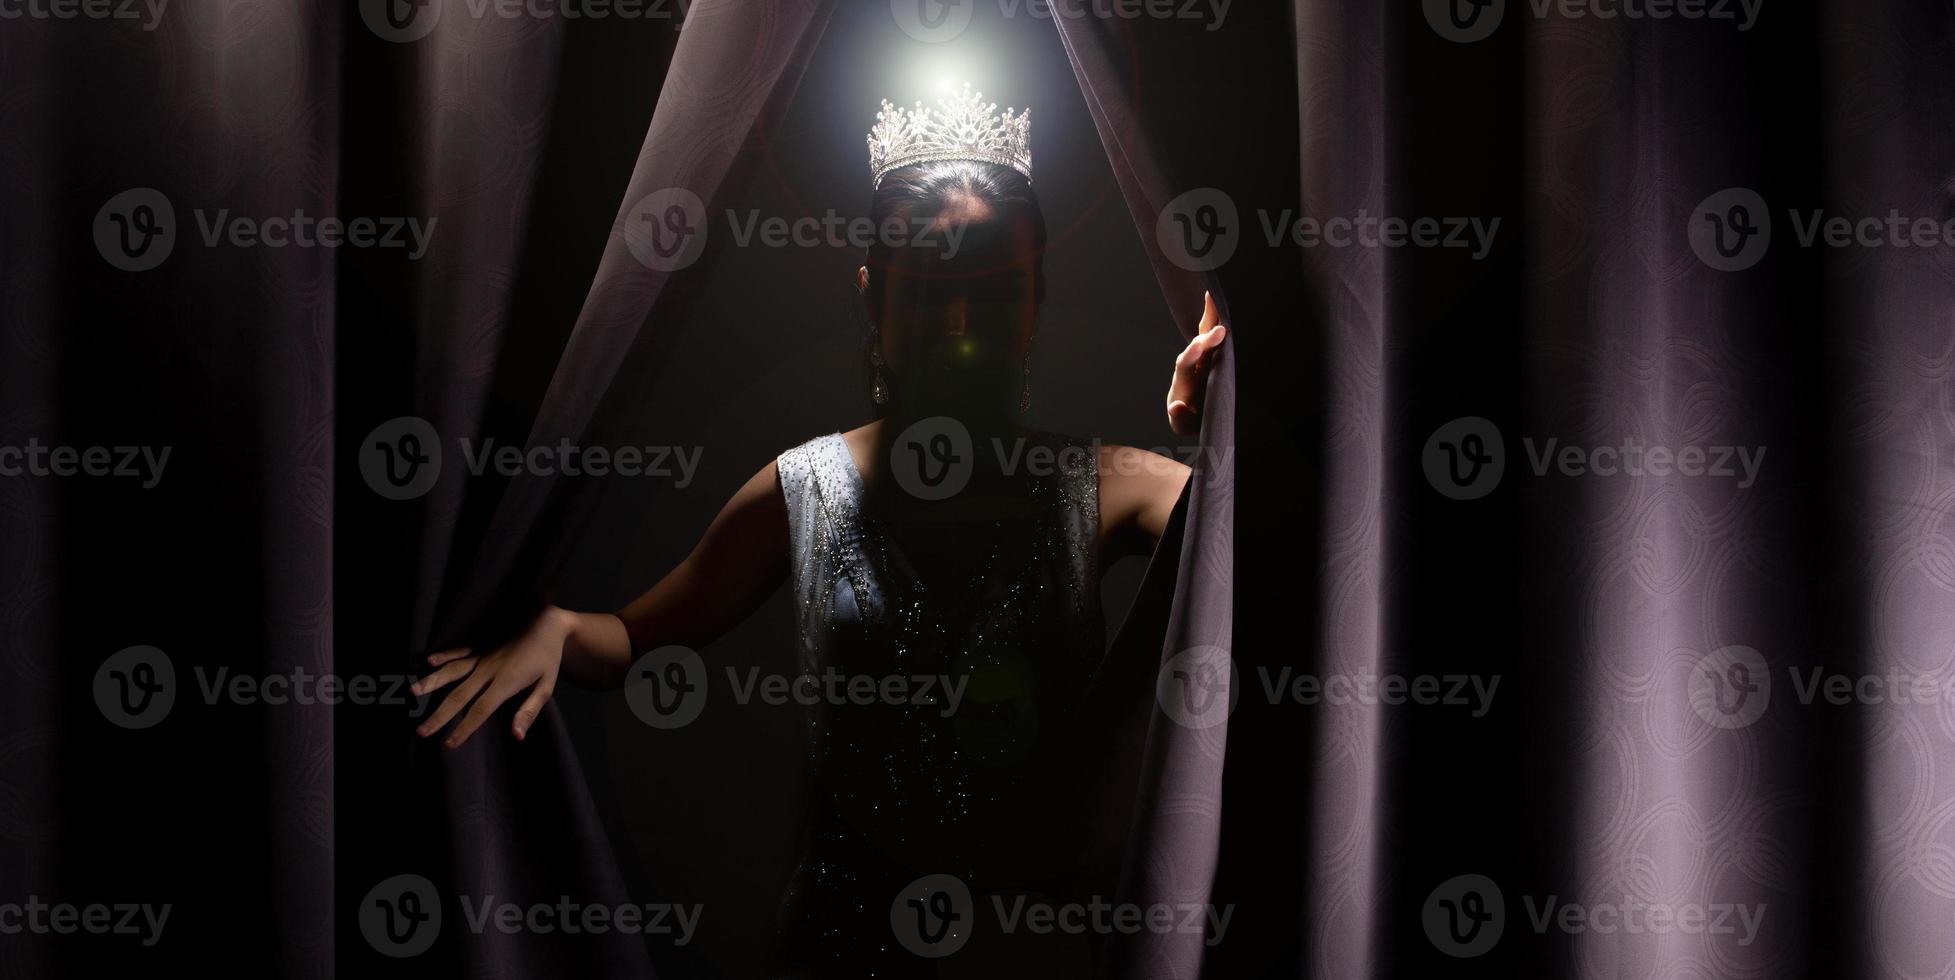 Miss Festzug Schönheitswettbewerb trägt Pailletten Abendkleid langes Kleid mit funkelnder Diamantkrone, asiatische Frau öffnet lila Vorhang nach dem Gewinn der letzten Runde als neue Lebensweise, Gelegenheit, Veränderung, isoliert foto